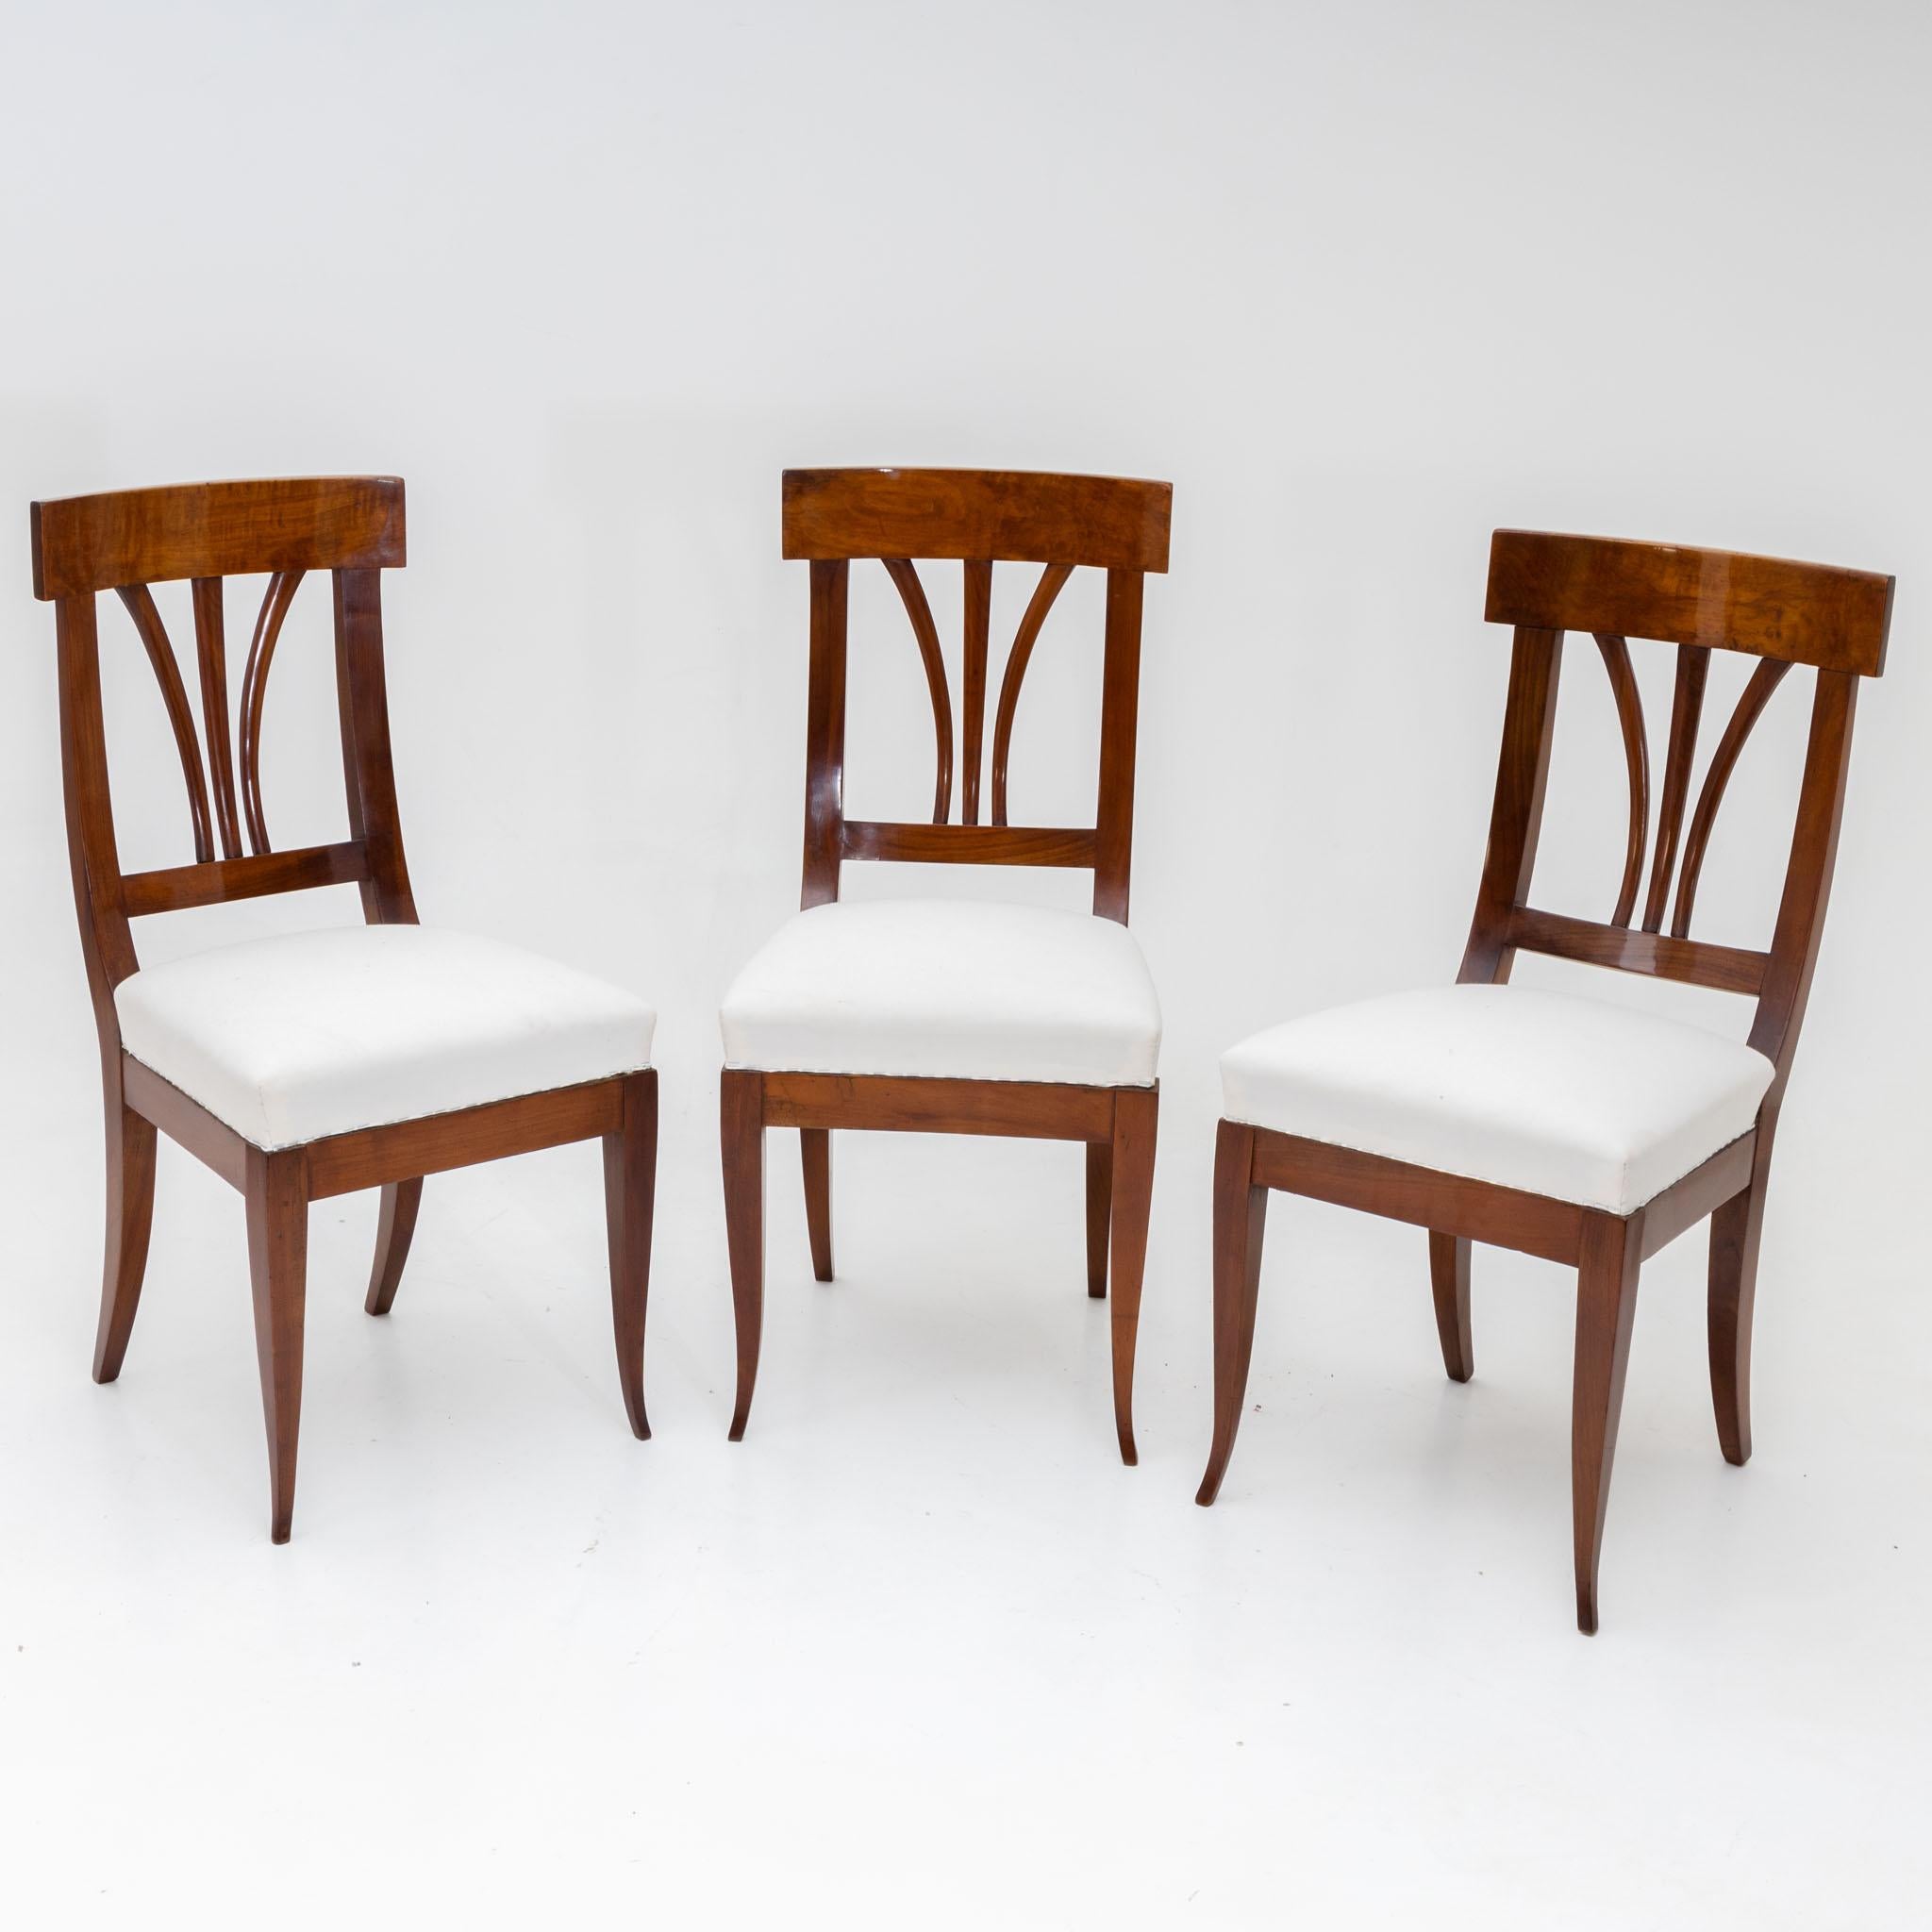 Satz von drei Biedermeier-Stühlen aus Nussbaum mit weiß gepolsterten Sitzen und Rückenlehnen mit drei Streben. Die Stühle stehen auf ausgestellten Beinen und wurden neu gepolstert und handpoliert.